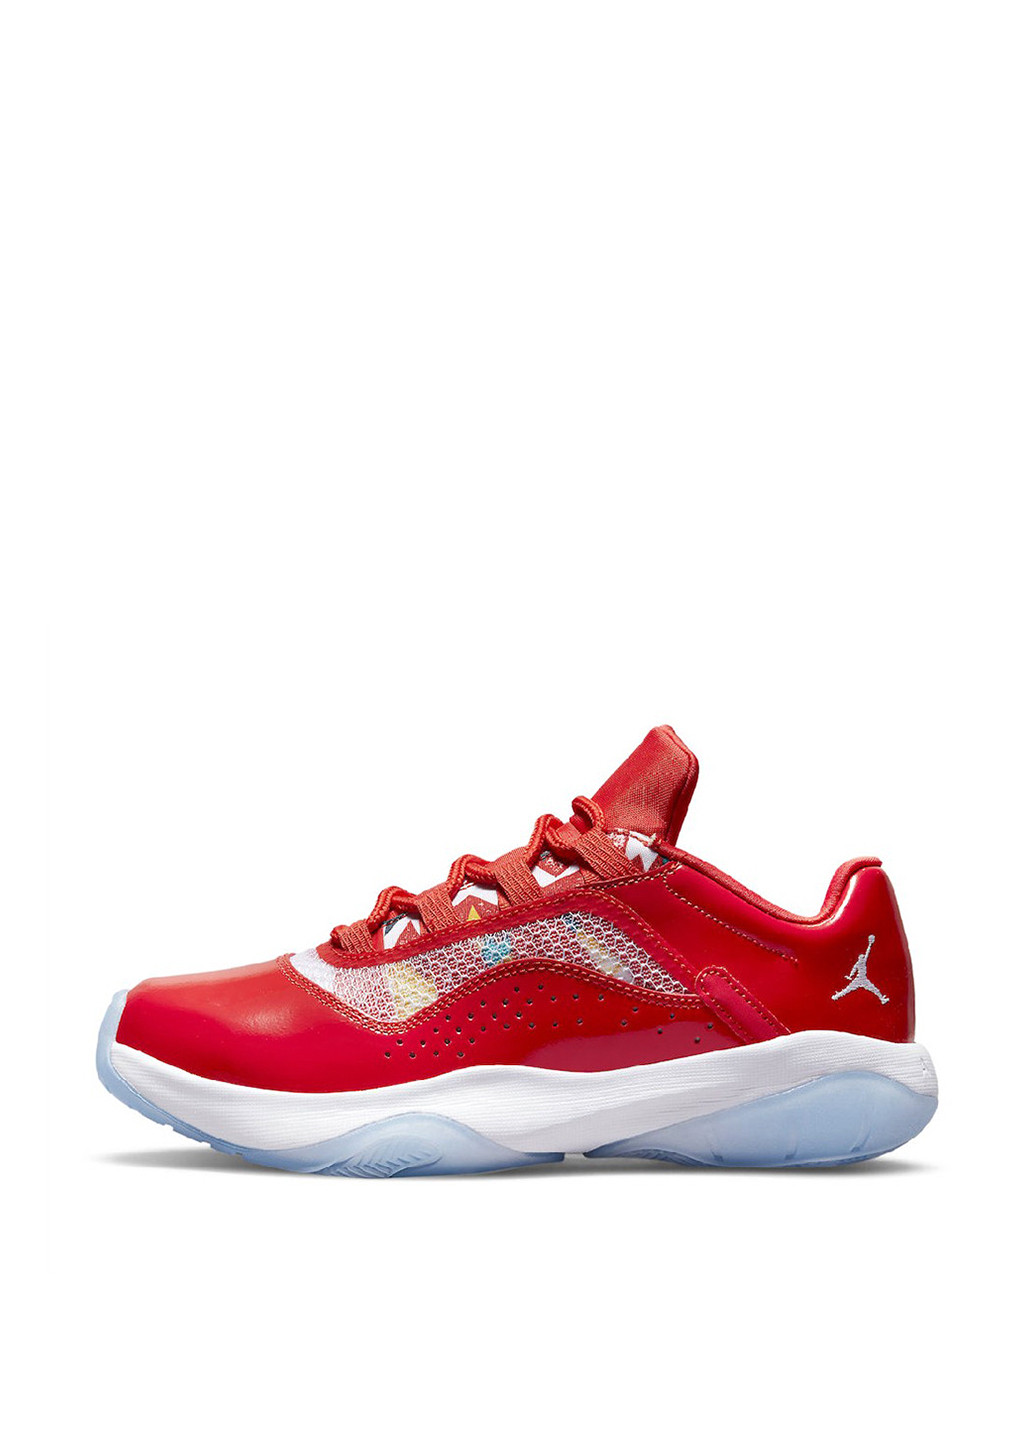 Красные демисезонные кроссовки dq0928-600_2024 Jordan 11 Cmft Low Gs